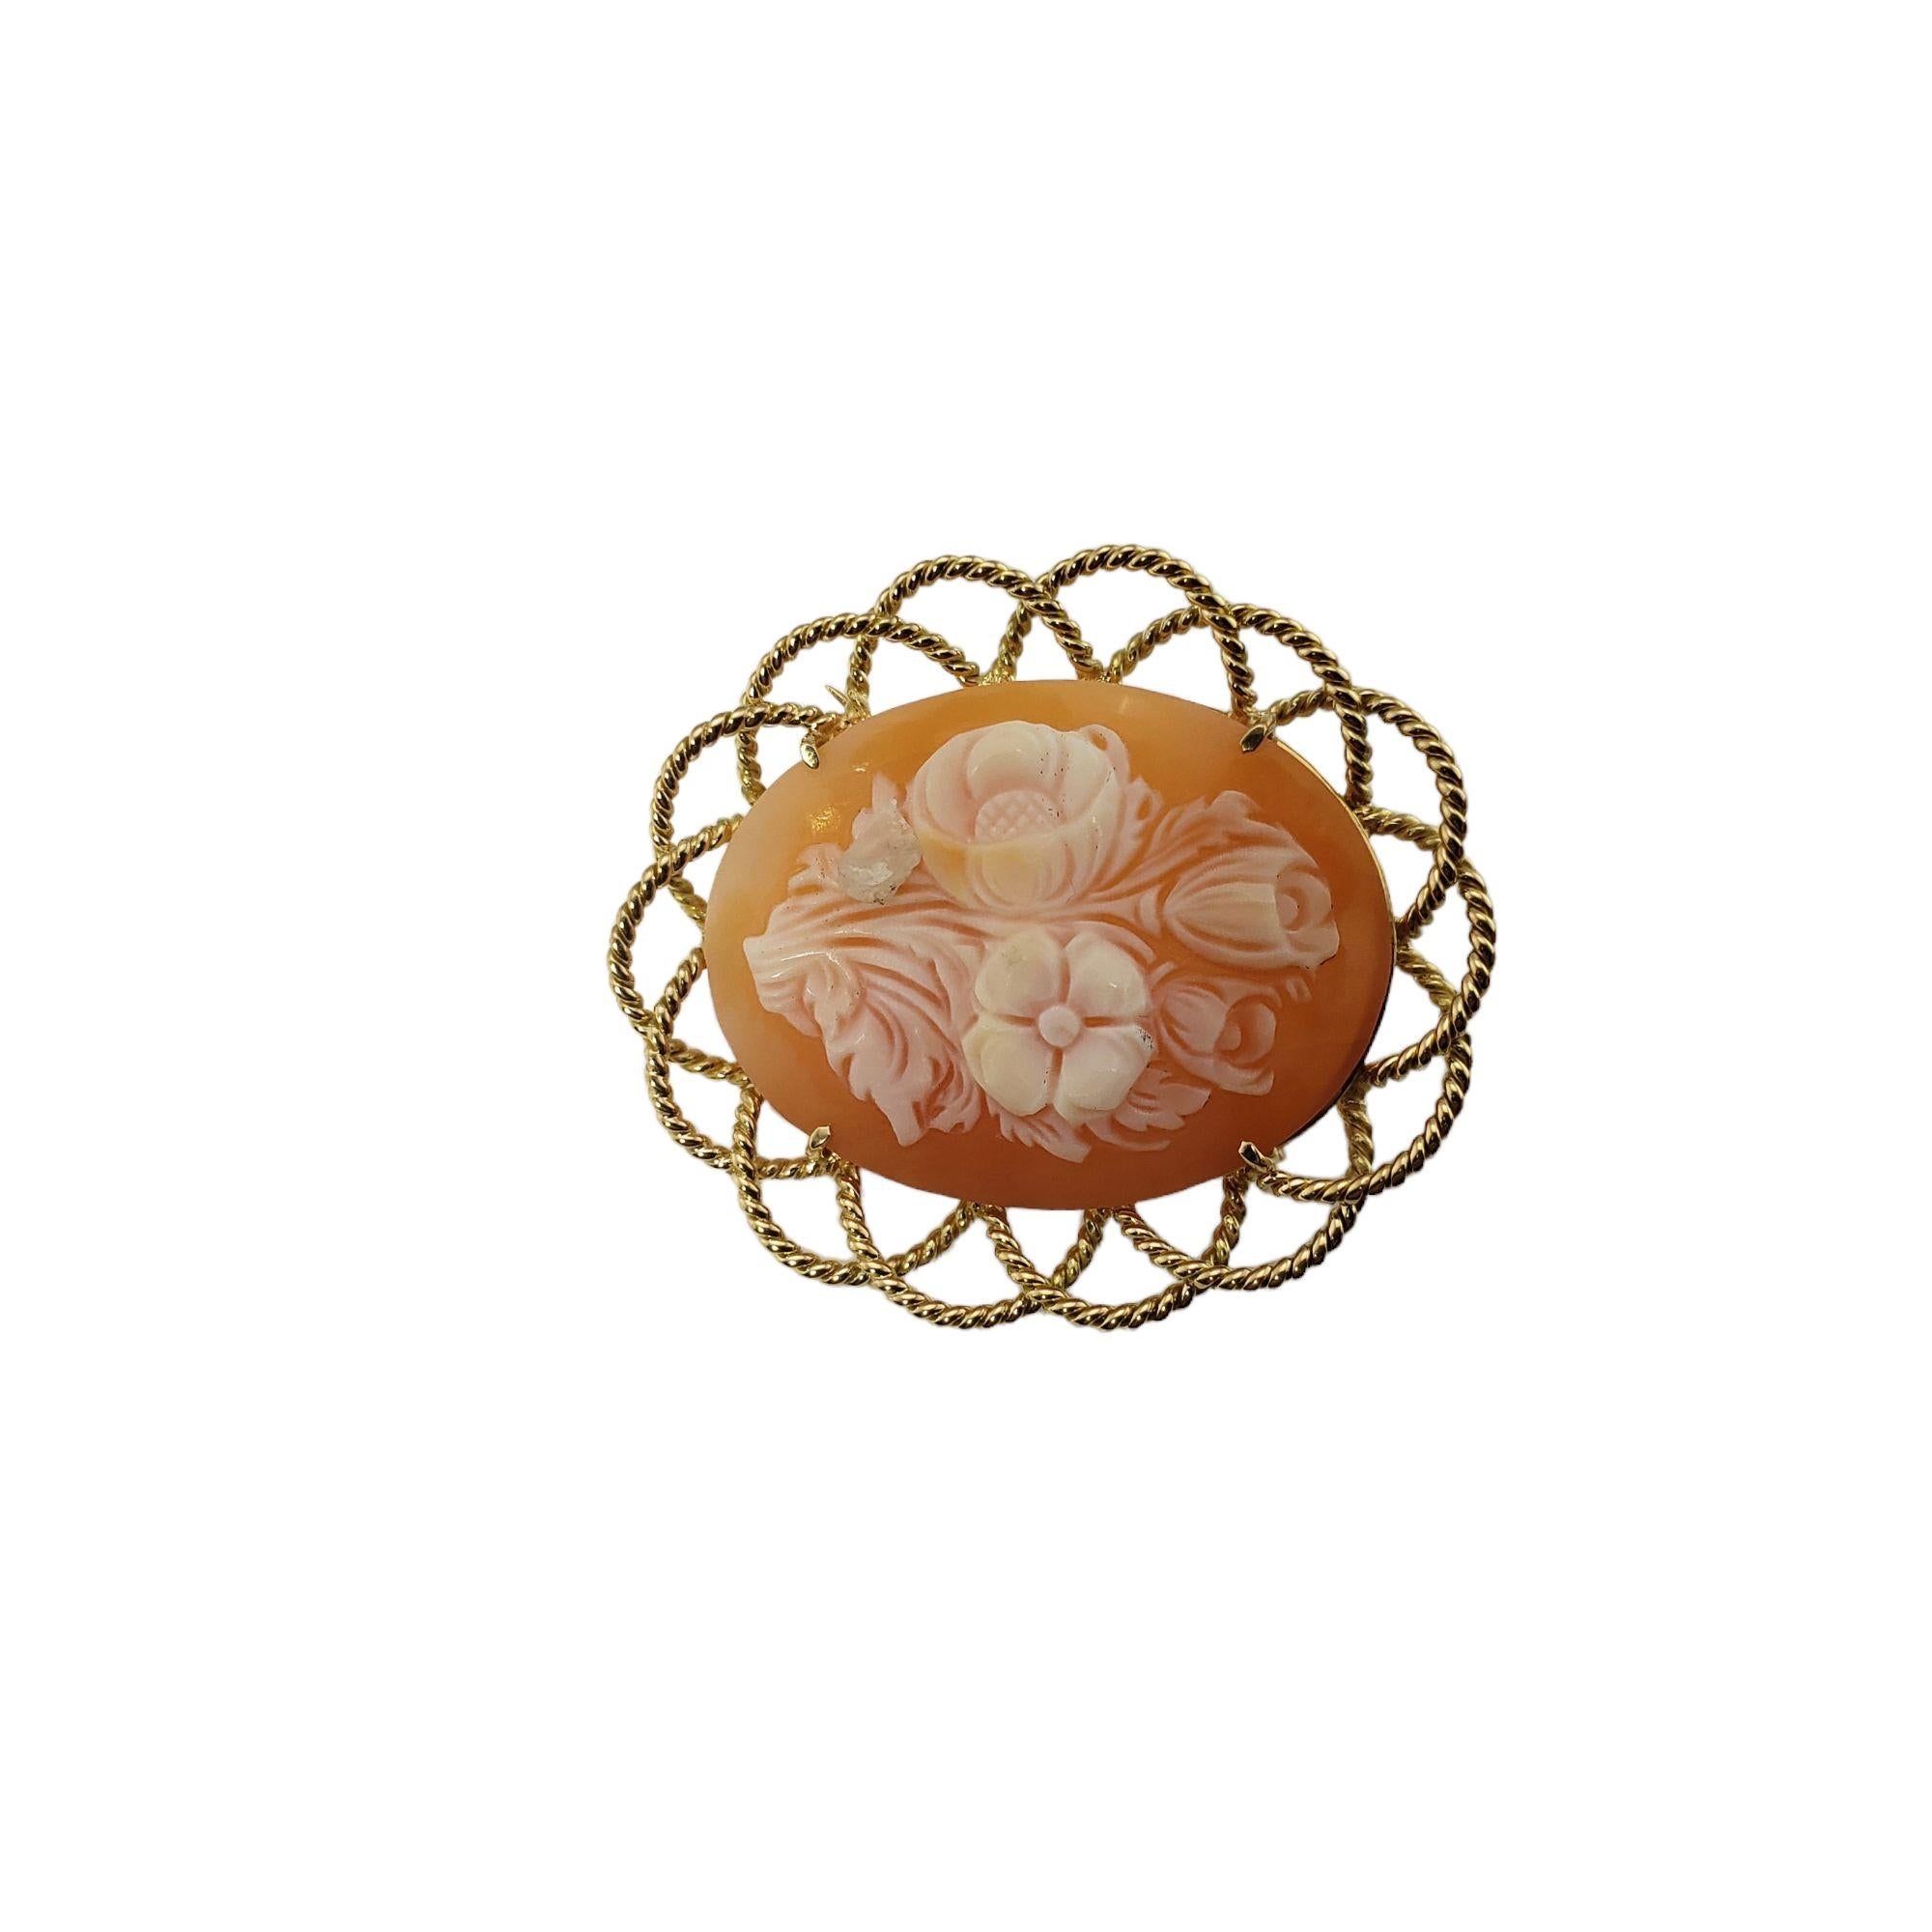 Vintage 18 Karat Gelbgold Floral Cameo Brosche/Nadel-

Diese atemberaubende florale Kamee-Brosche ist in wunderschönes 18-karätiges Gelbgold eingefasst.

Größe: 38 mm x 33 mm

Gewicht: 4,8 dwt. / 7,6 gr.

Geprüftes 18K Gold.

Sehr guter Zustand,